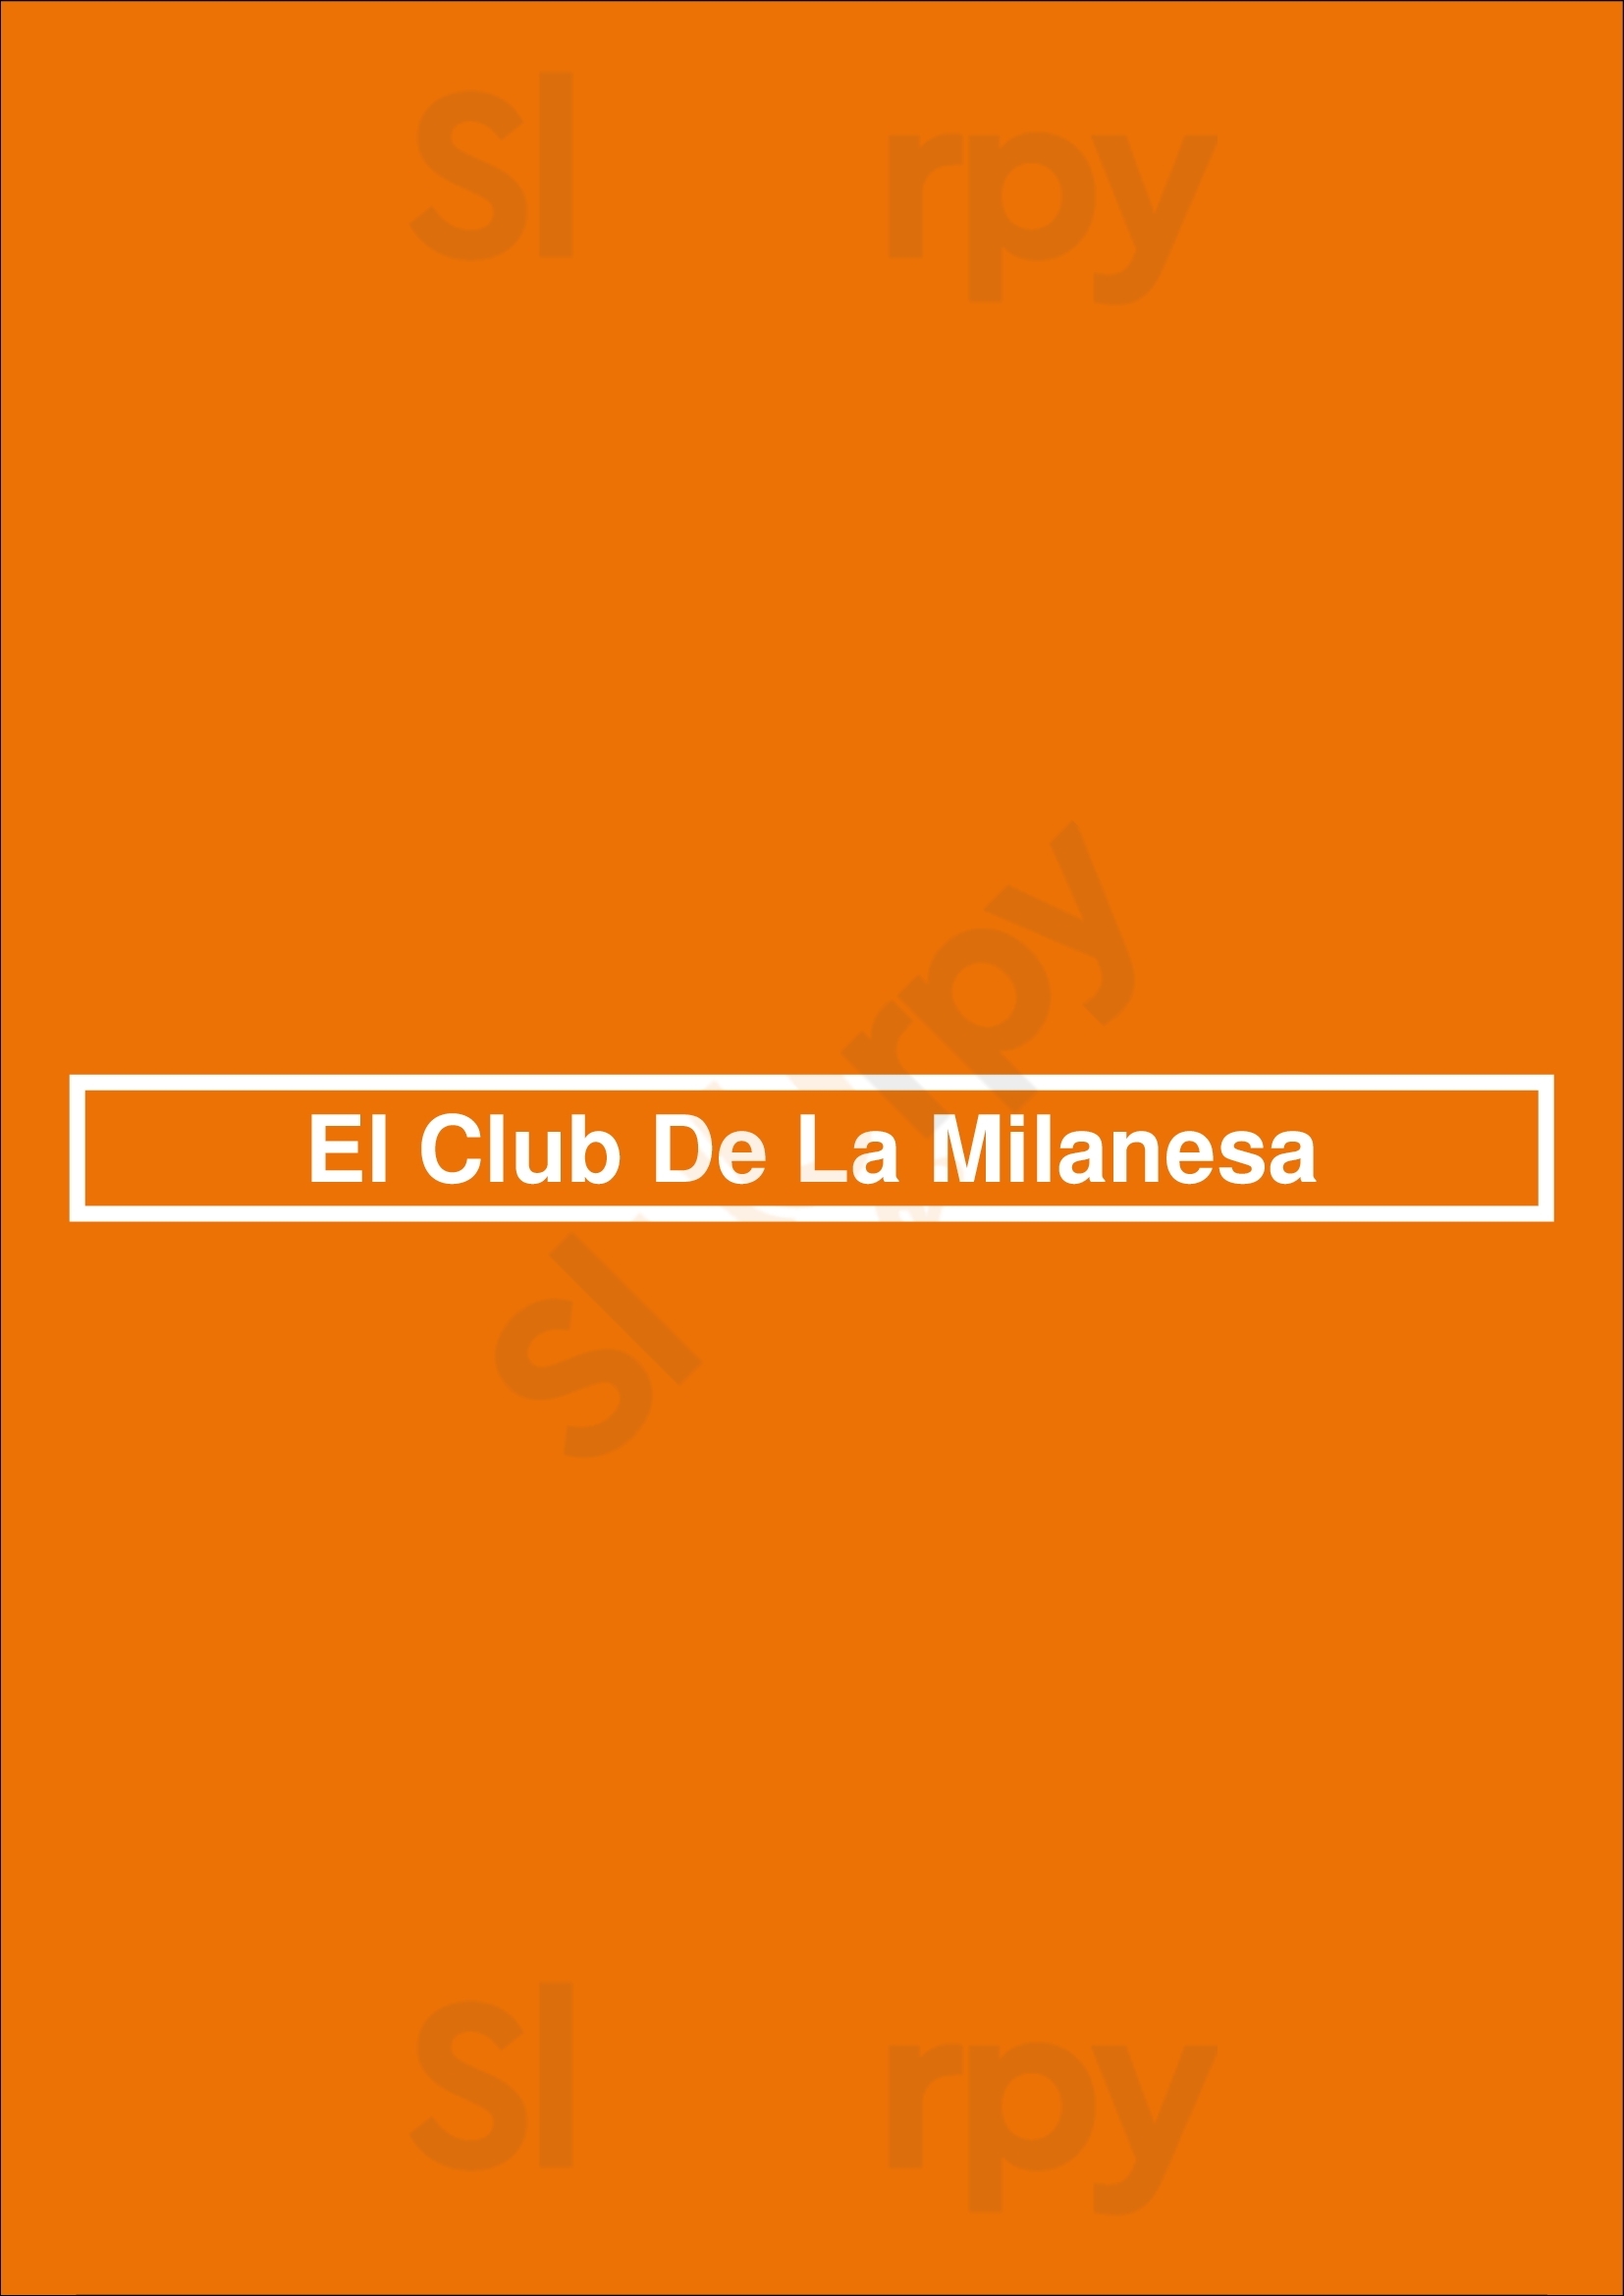 El Club De La Milanesa Buenos Aires Menu - 1